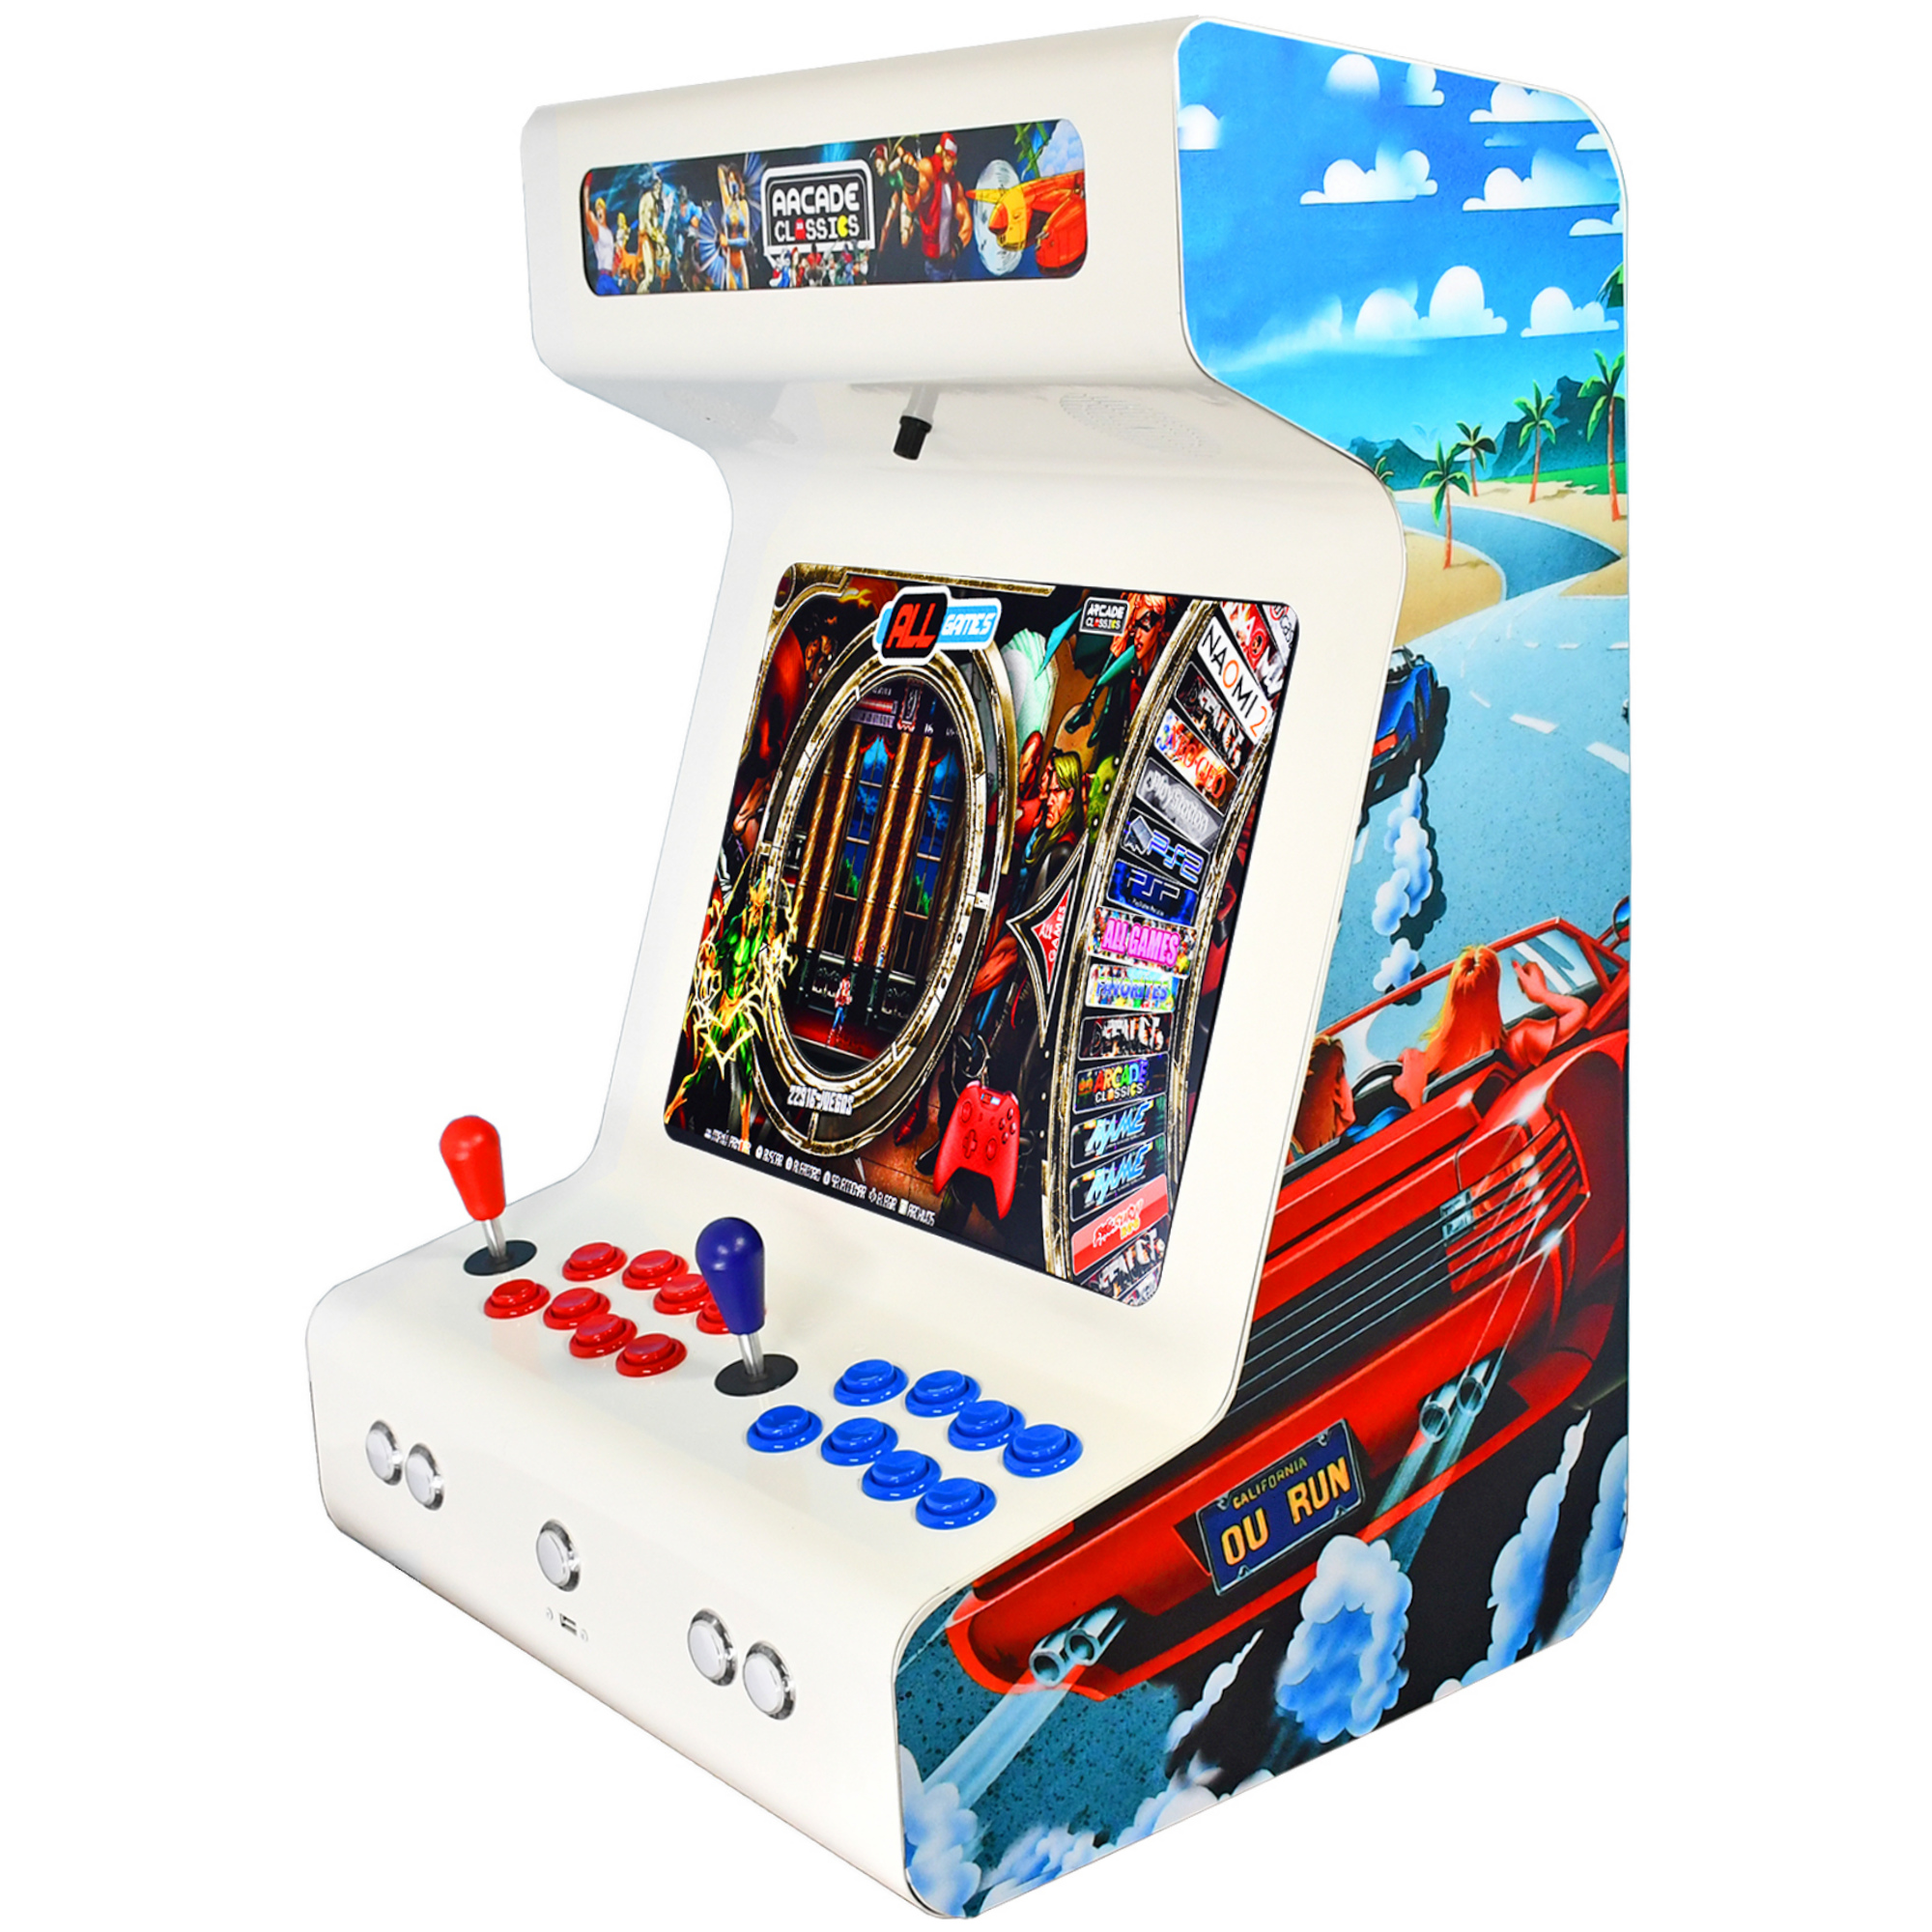 Máquinas Arcade: Variedad de modelos y colores